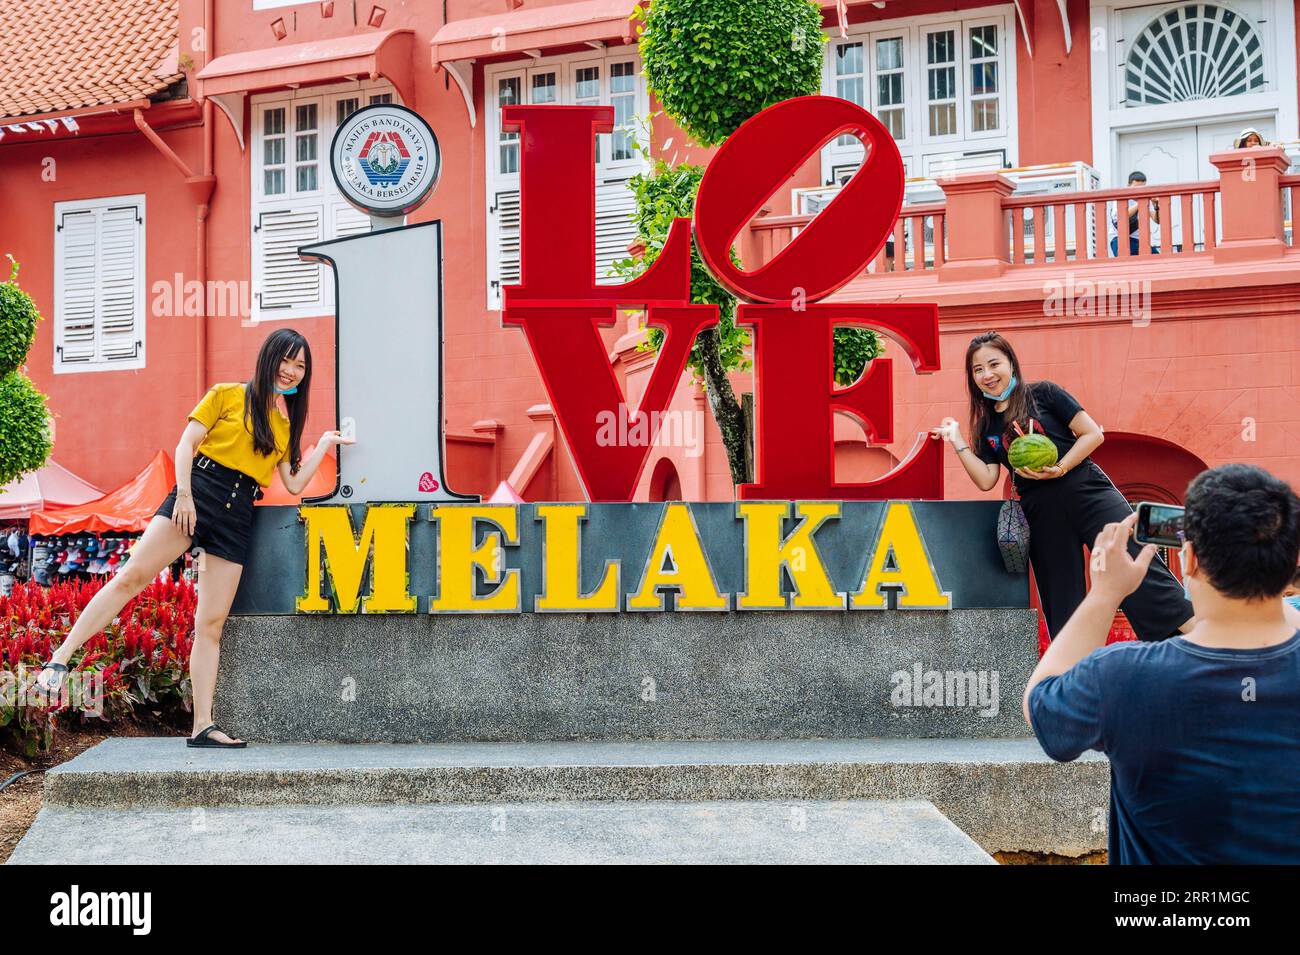 200921 -- MALACCA, 21 settembre 2020 -- i turisti si pongono per le foto a Malacca, Malesia, 19 settembre 2020. Nonostante non sia più un emporio, Malacca attrae ancora turisti da tutto il mondo, poiché il turismo sta diventando un pilastro dell'economia locale. L'industria ha subito un duro colpo in mezzo alla pandemia, ma poiché i malesi possono ora viaggiare all'interno del paese, il posto sta lentamente tornando in vita. PER ANDARE CON la caratteristica: L'antico porto della Malesia torna lentamente in vita mentre il turismo domestico riprende LA MALAYSIA-MALACCA-COVID-19-TURISMO-RECUPERO ZhuxWei PUBLICATIONxNOTxINxCHN Foto Stock